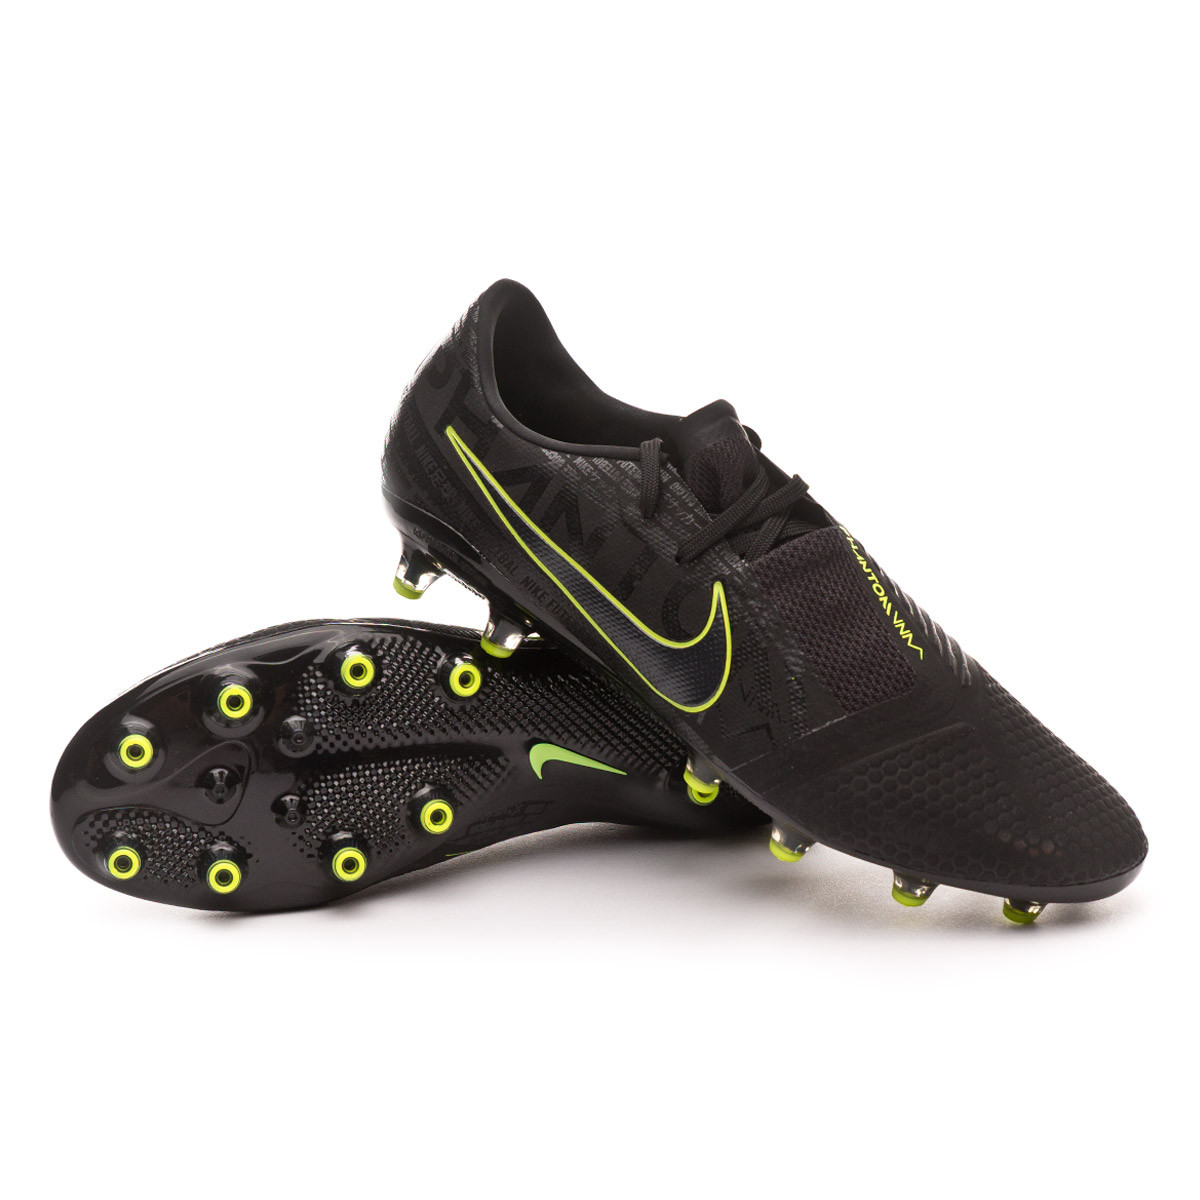 Nike Phantom Venom Academy TF Turf Football Shoe. Nike DK